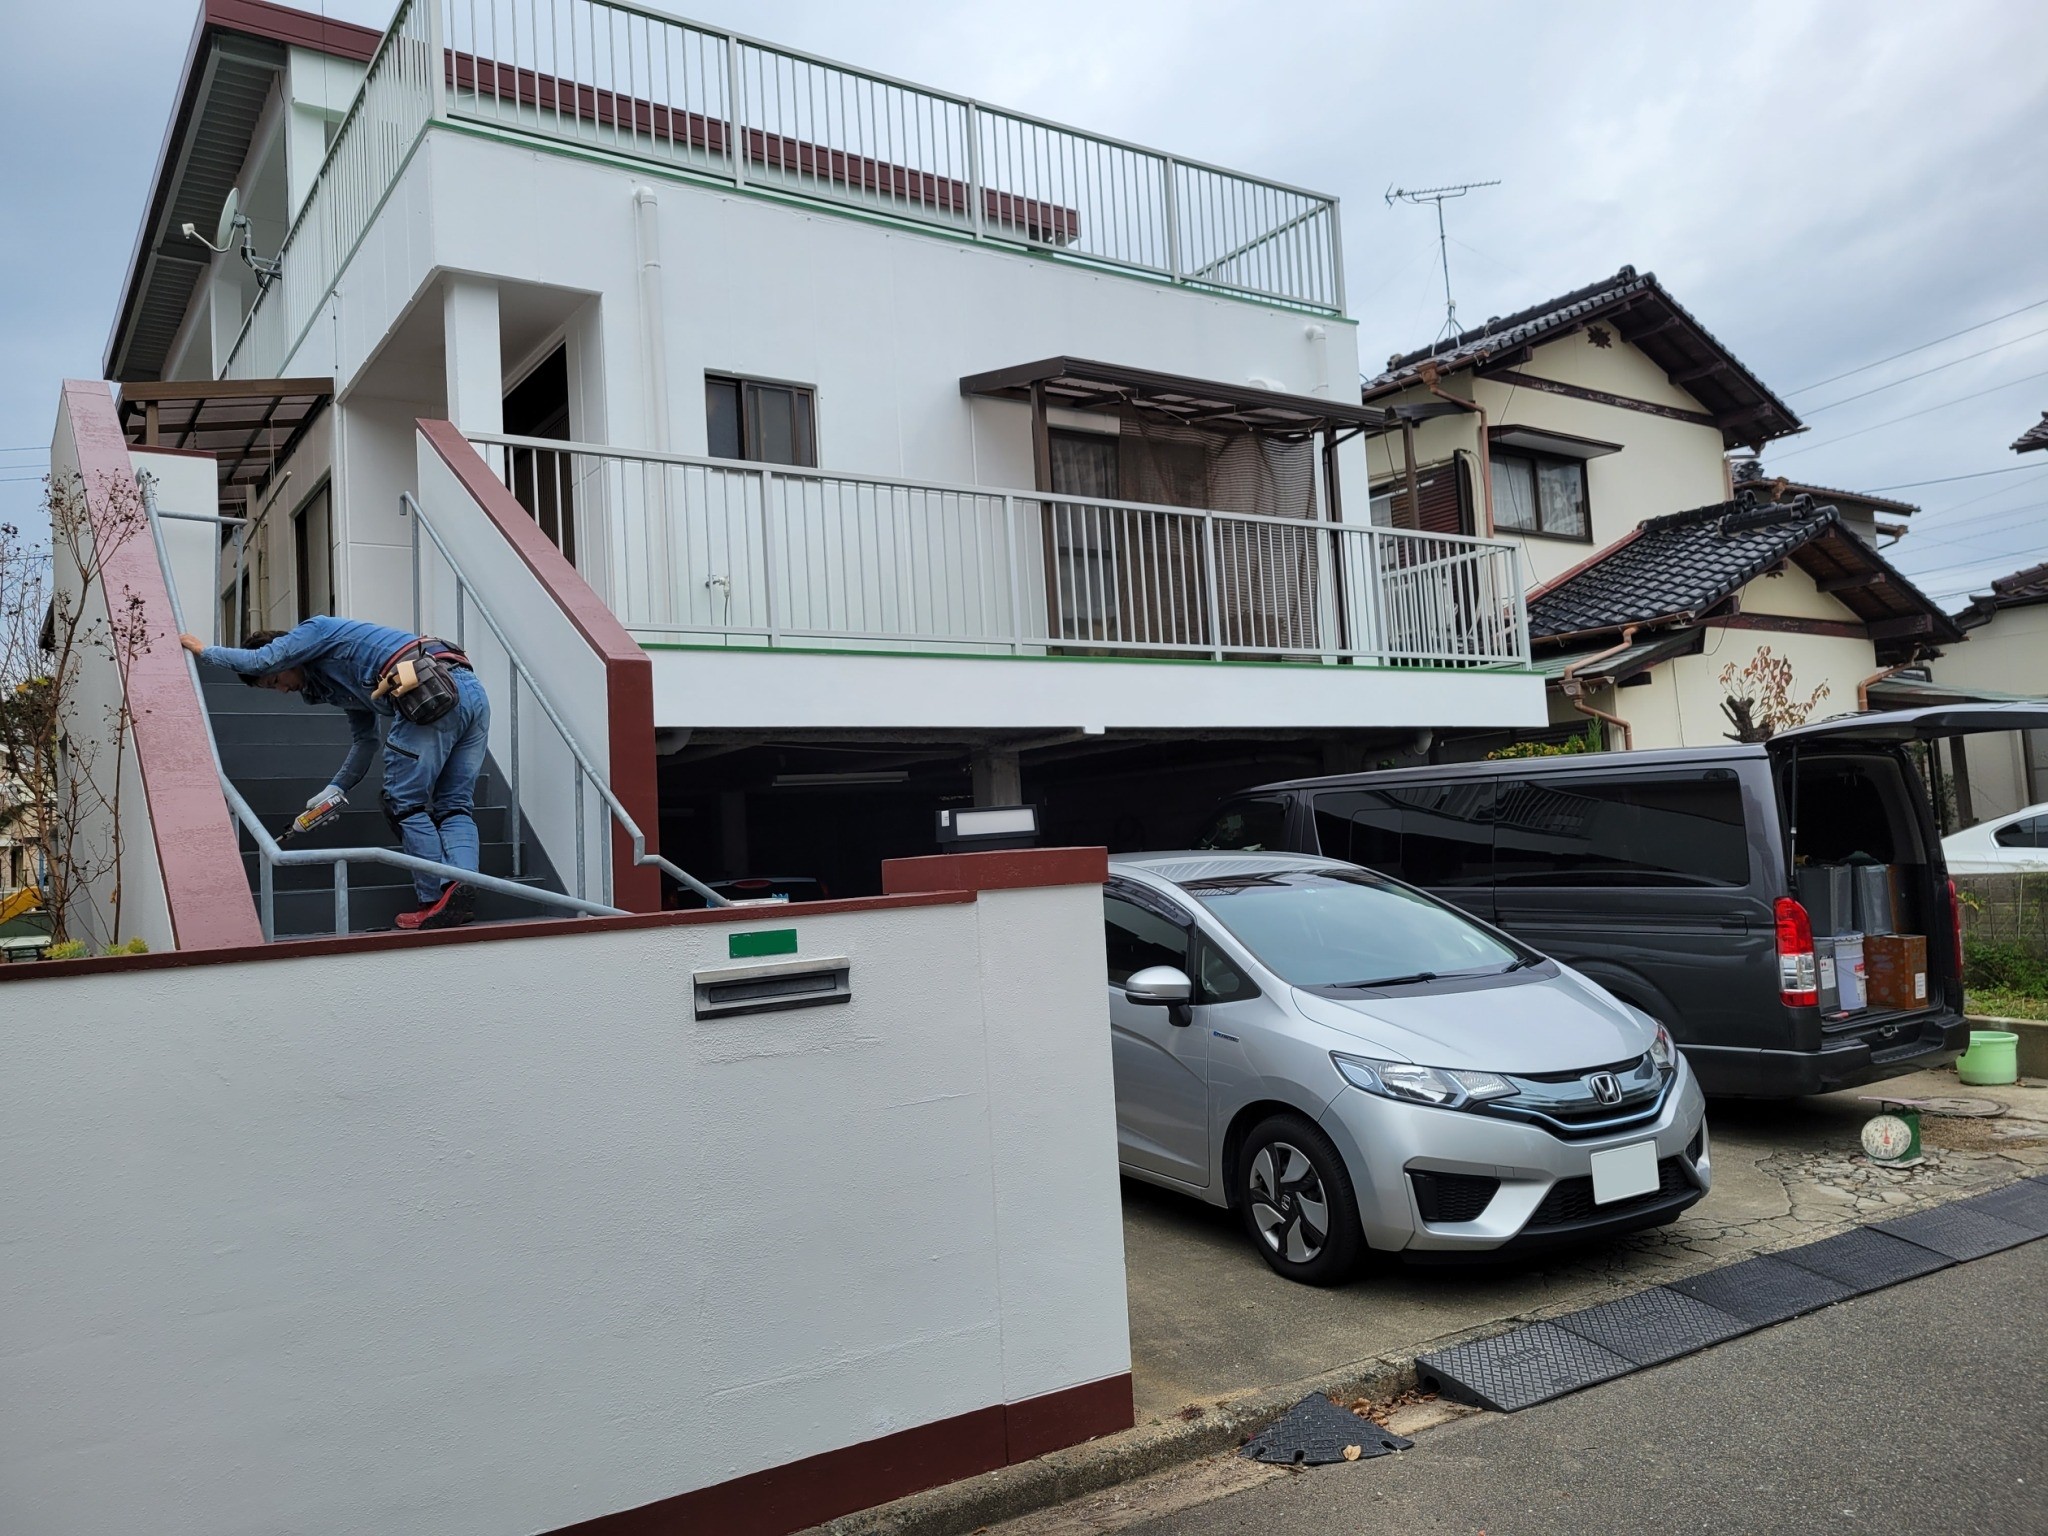 福岡県古賀市天神のK様邸で全体的に傷みが出ている外壁の補修や雨漏りの改善を行いつつ外壁塗装で防水性を高めていきました。12/15完成です。【HPより】